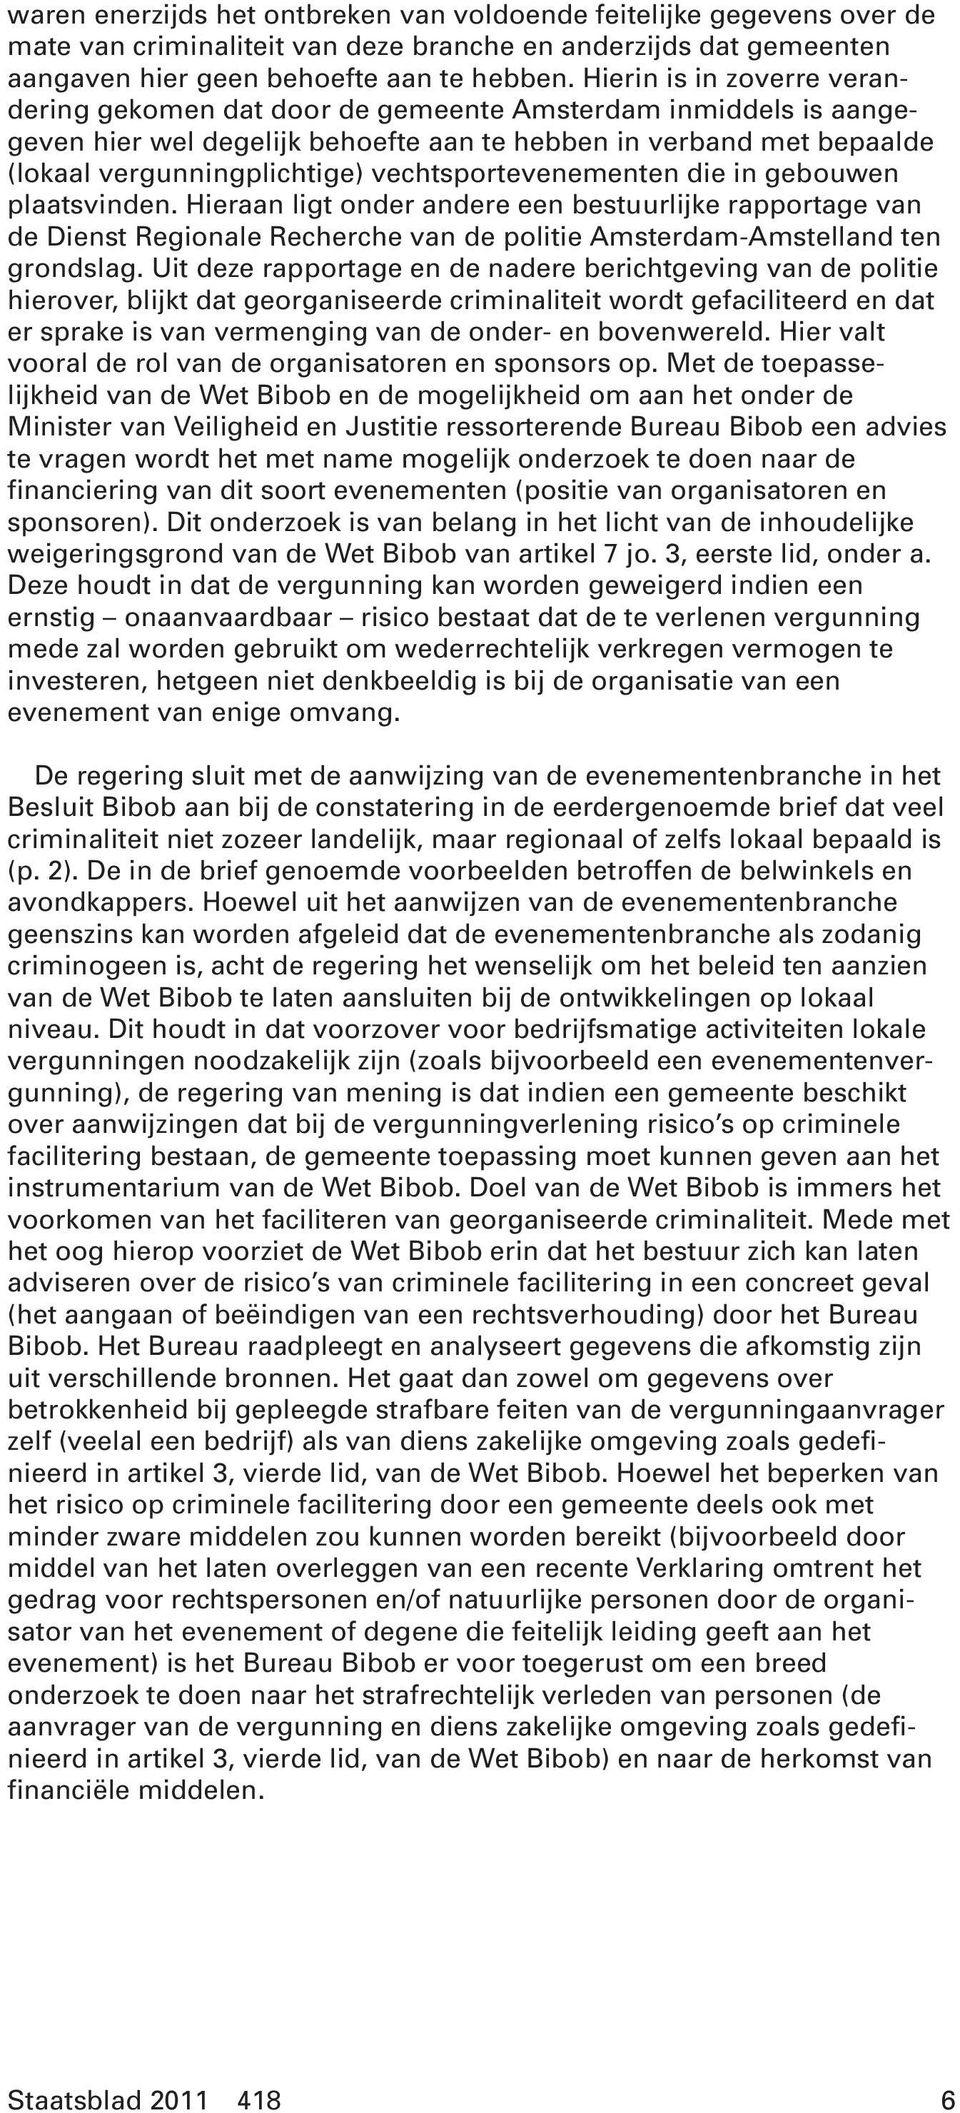 vechtsportevenementen die in gebouwen plaatsvinden. Hieraan ligt onder andere een bestuurlijke rapportage van de Dienst Regionale Recherche van de politie Amsterdam-Amstelland ten grondslag.